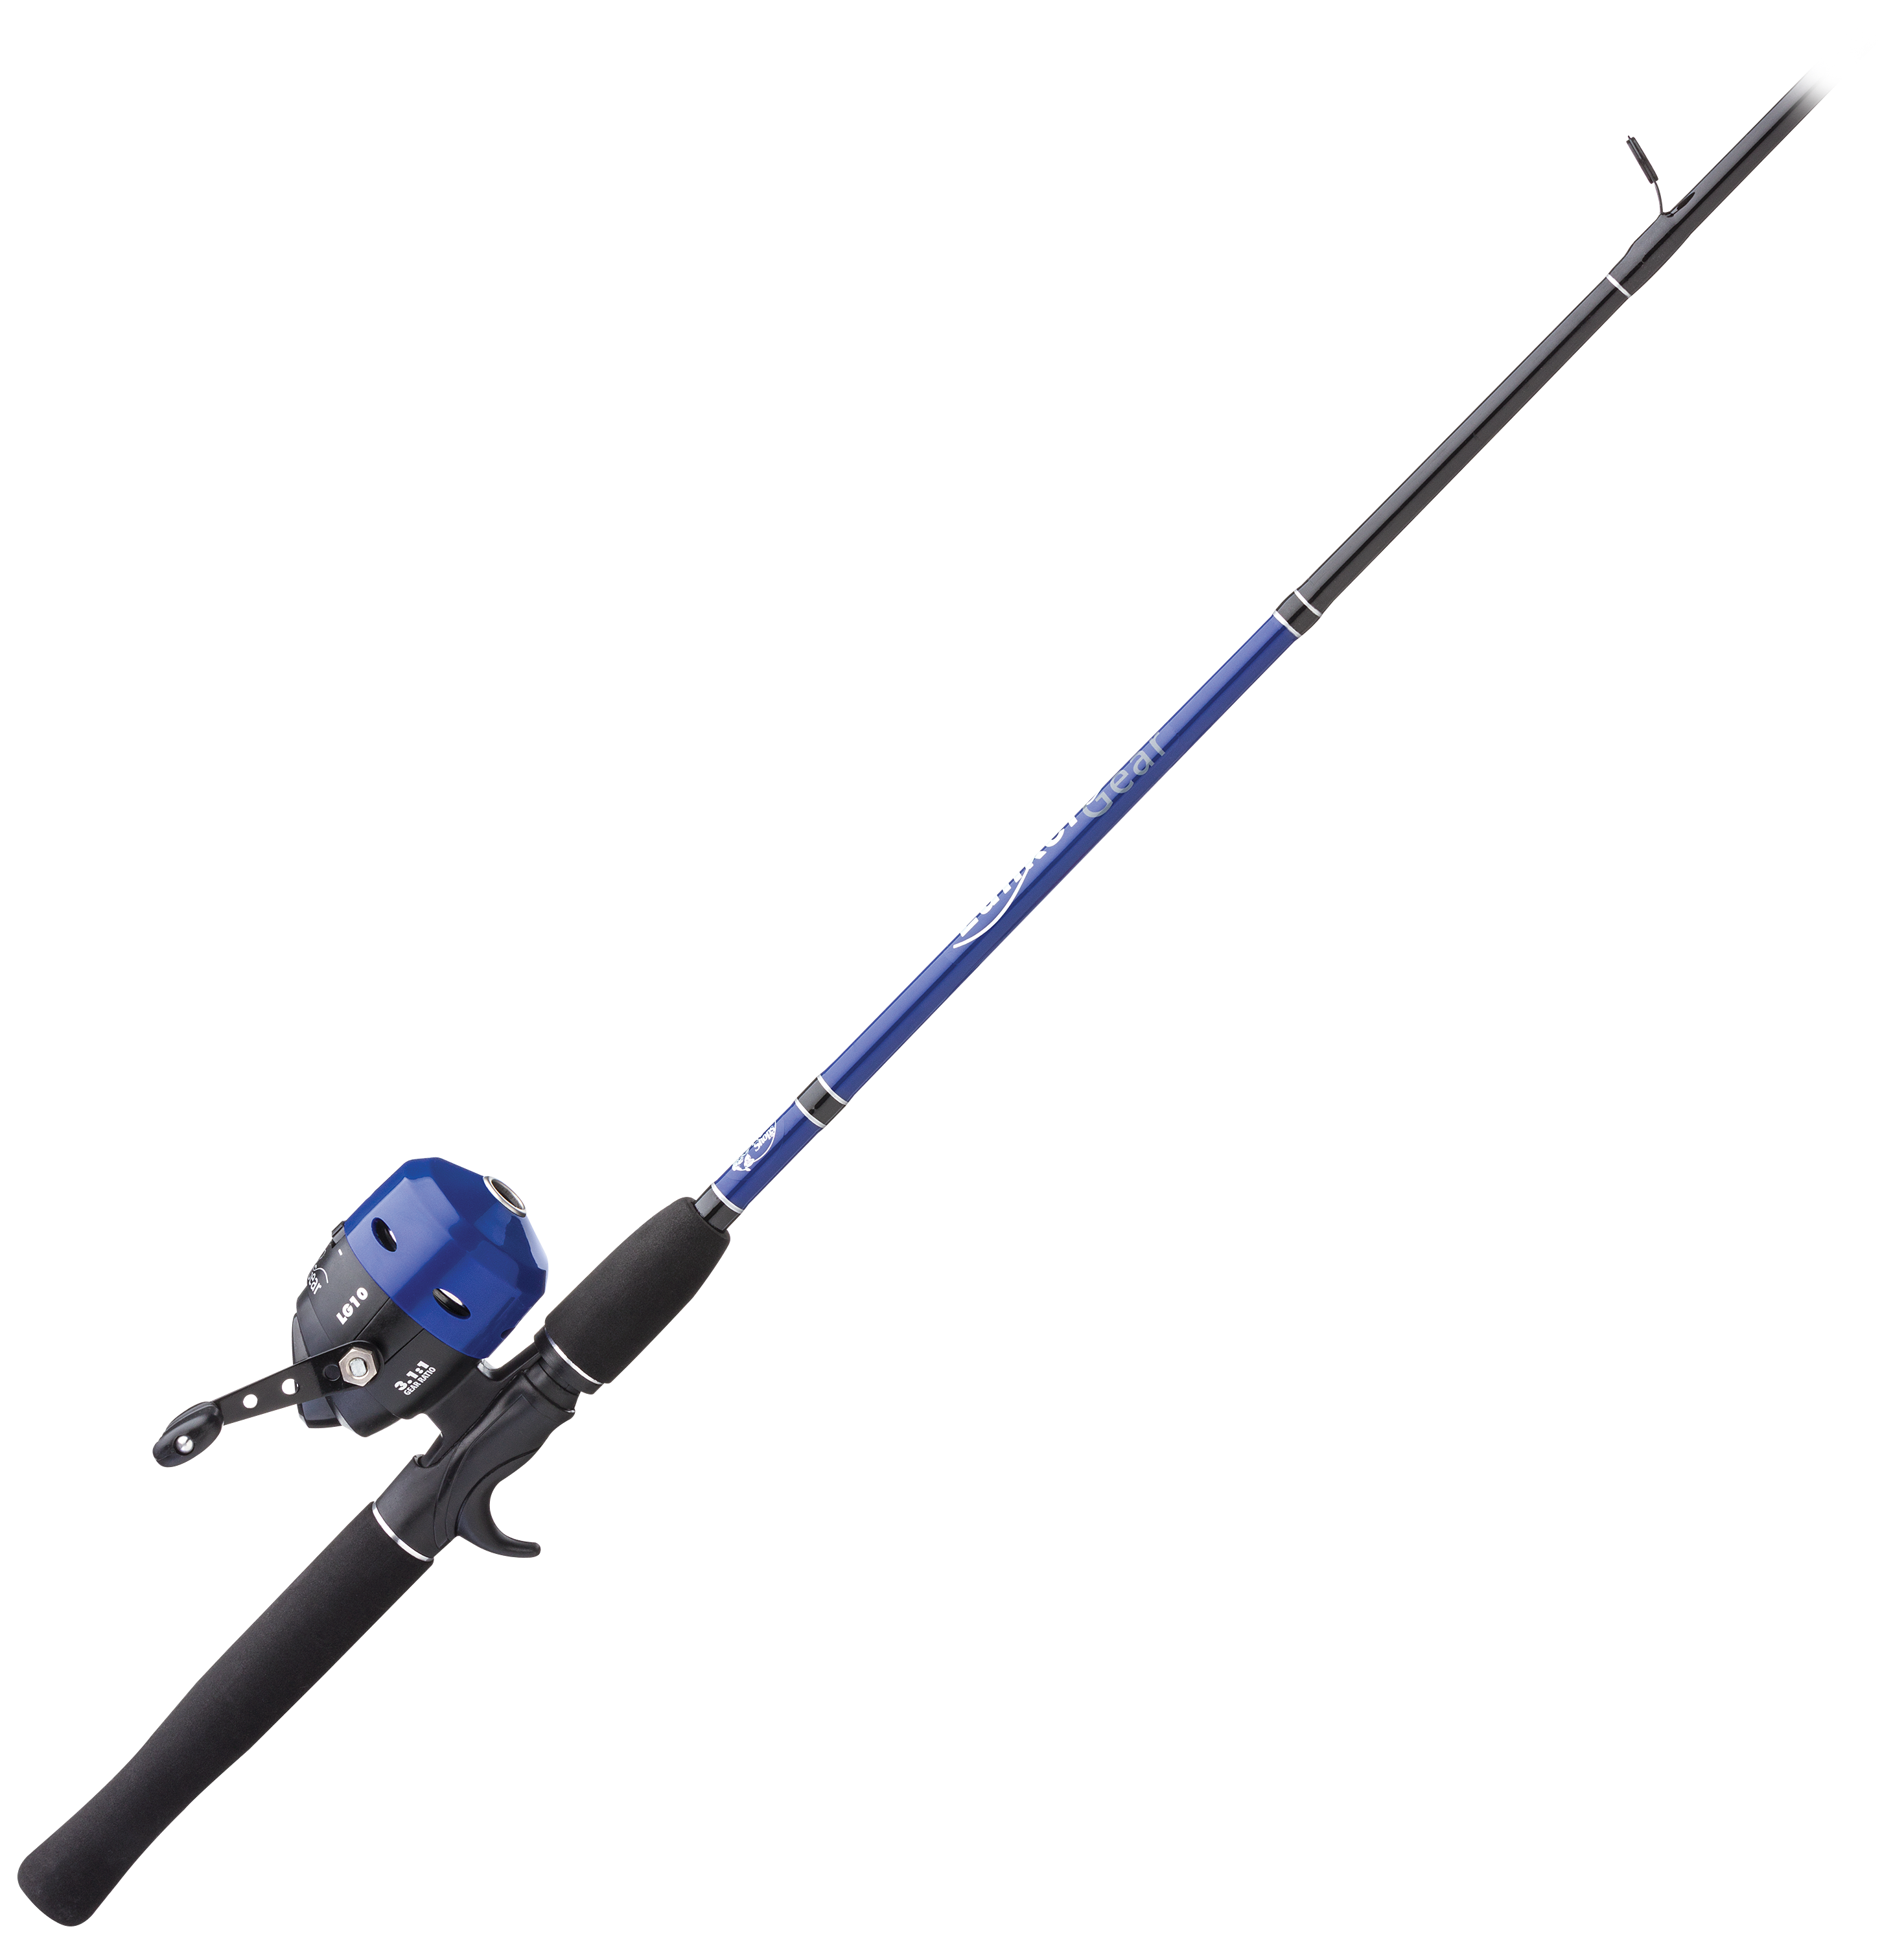 Bass Pro Shops Lunker Gear Rod & Reel Spincast Combo Kit - Blue